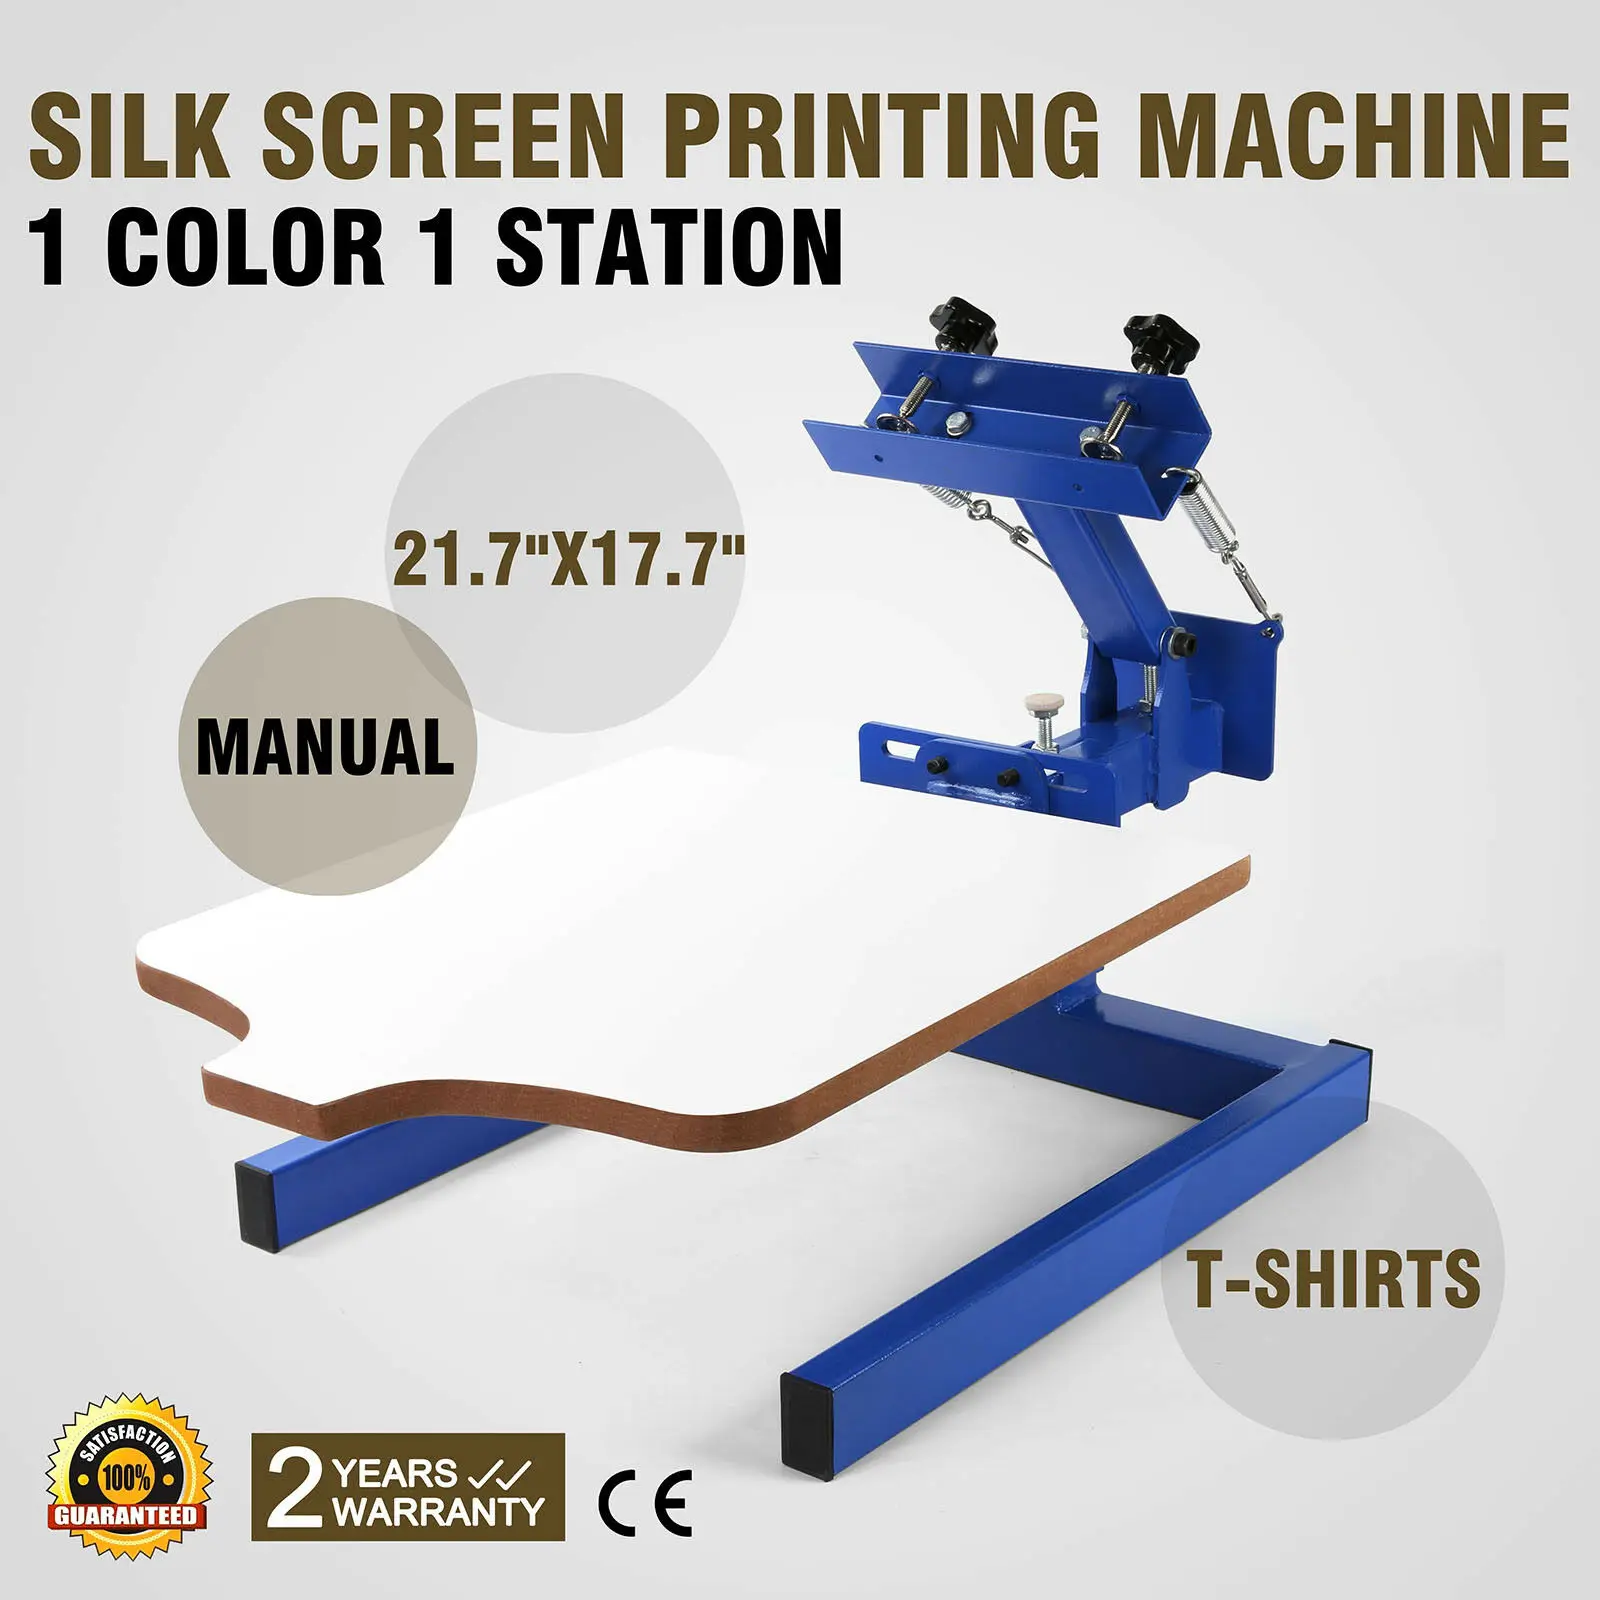 Шелкотрафаретная печатная машина 1 цвет станция S ручная печать стекла DIY |